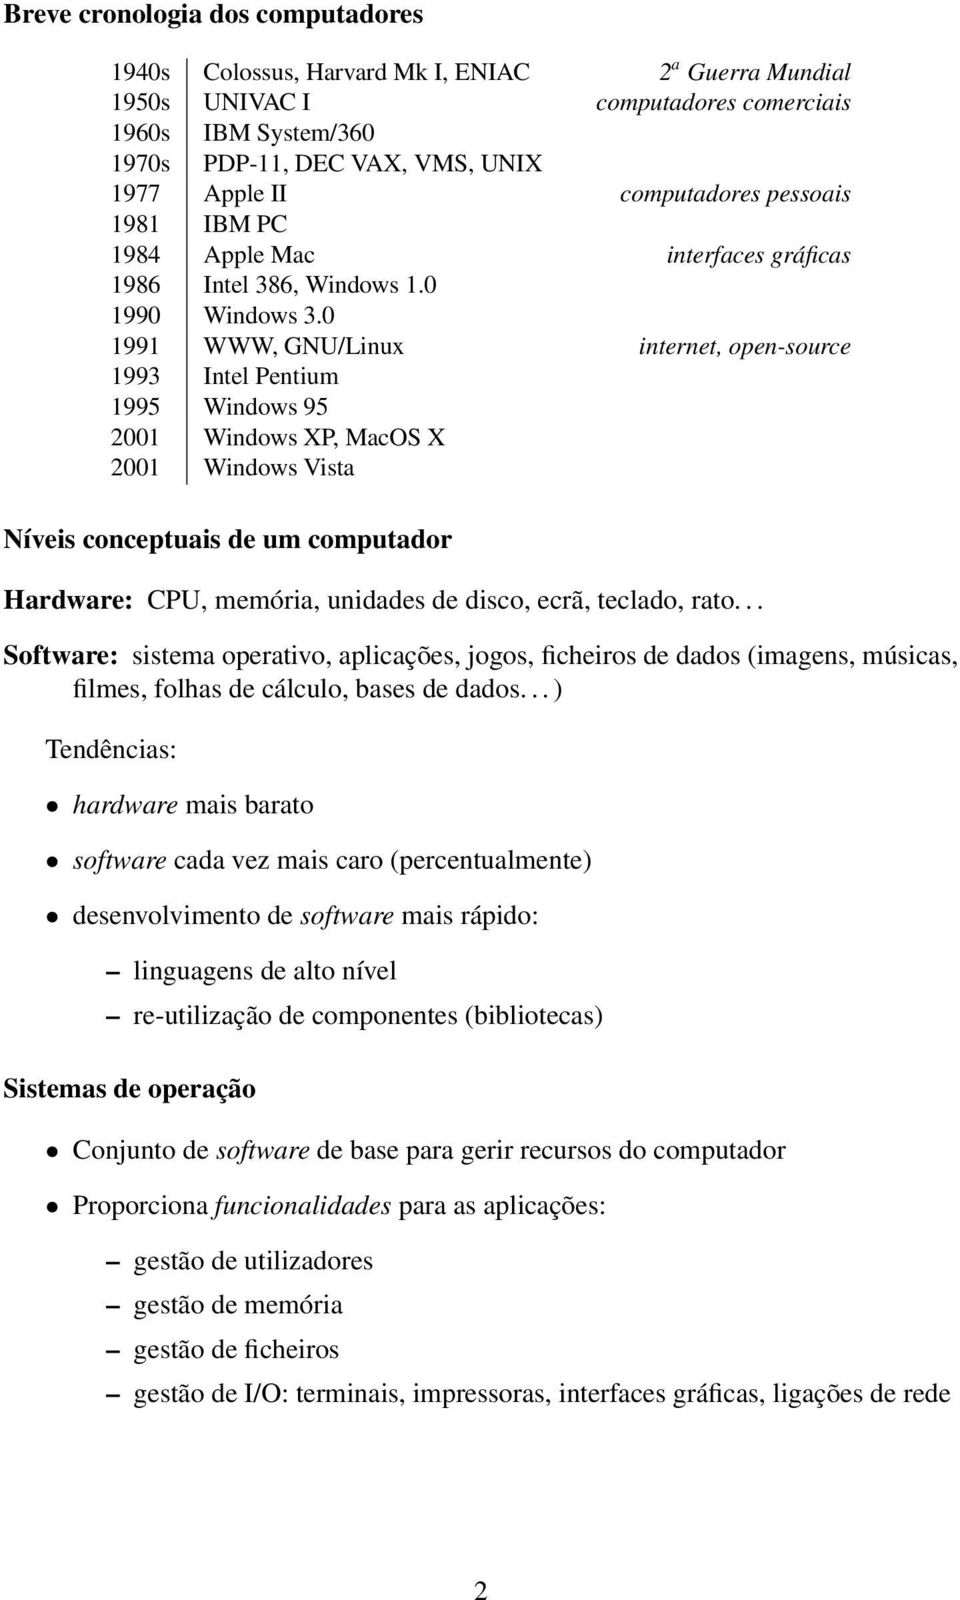 0 1991 WWW, GNU/Linux internet, open-source 1993 Intel Pentium 1995 Windows 95 2001 Windows XP, MacOS X 2001 Windows Vista Níveis conceptuais de um computador Hardware: CPU, memória, unidades de